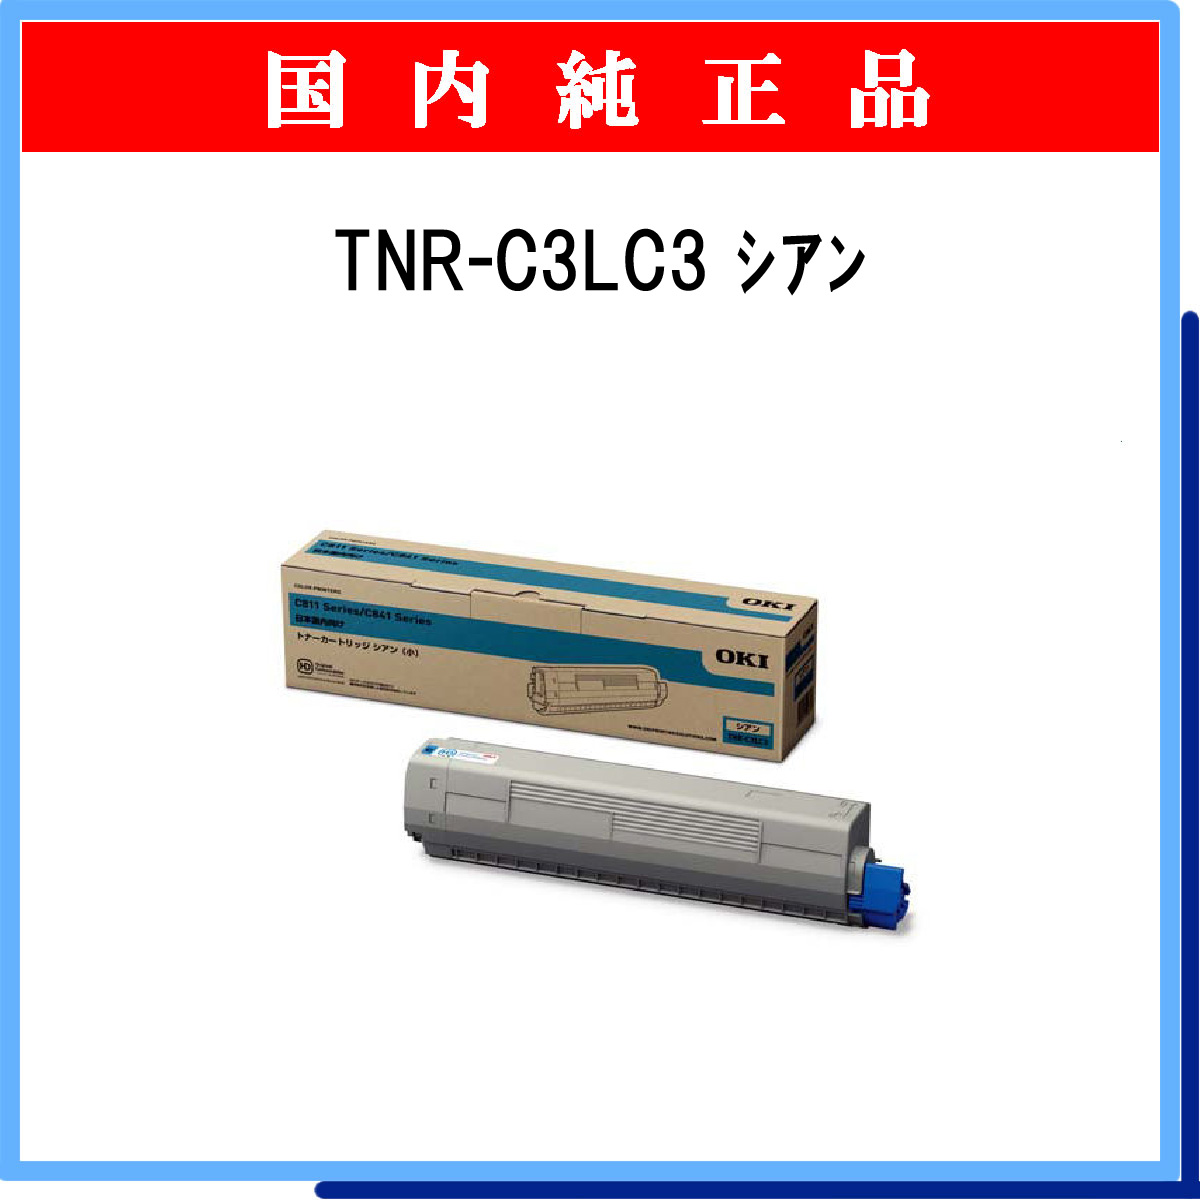 TNR-C3LC3 純正